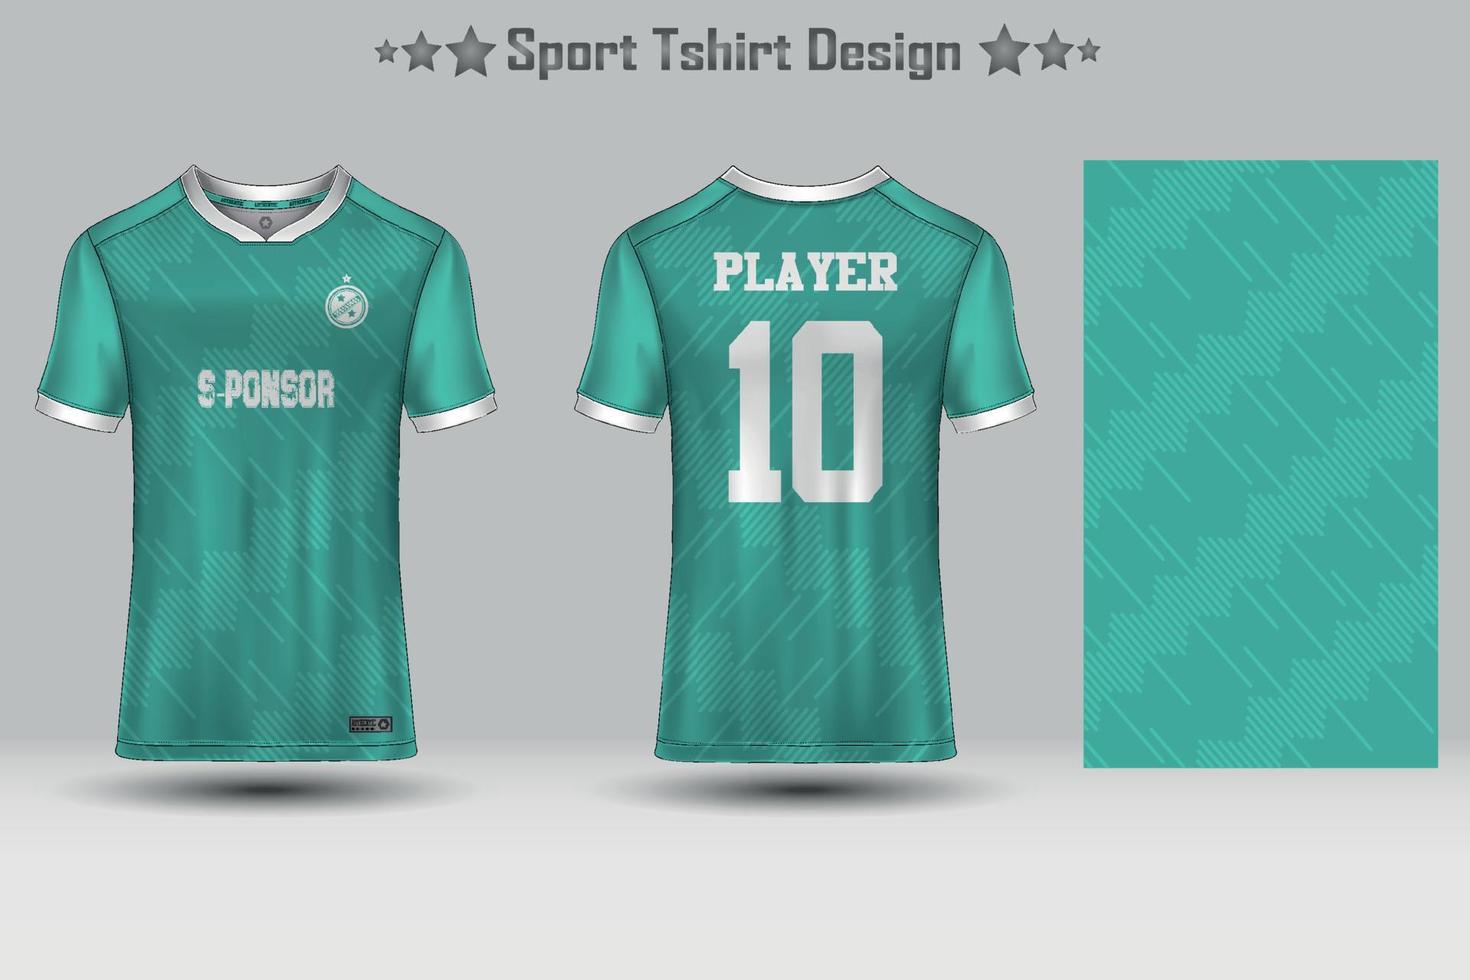 modelo de maquete de padrão geométrico de camisa de futebol abstrata design de camiseta esportiva vetor